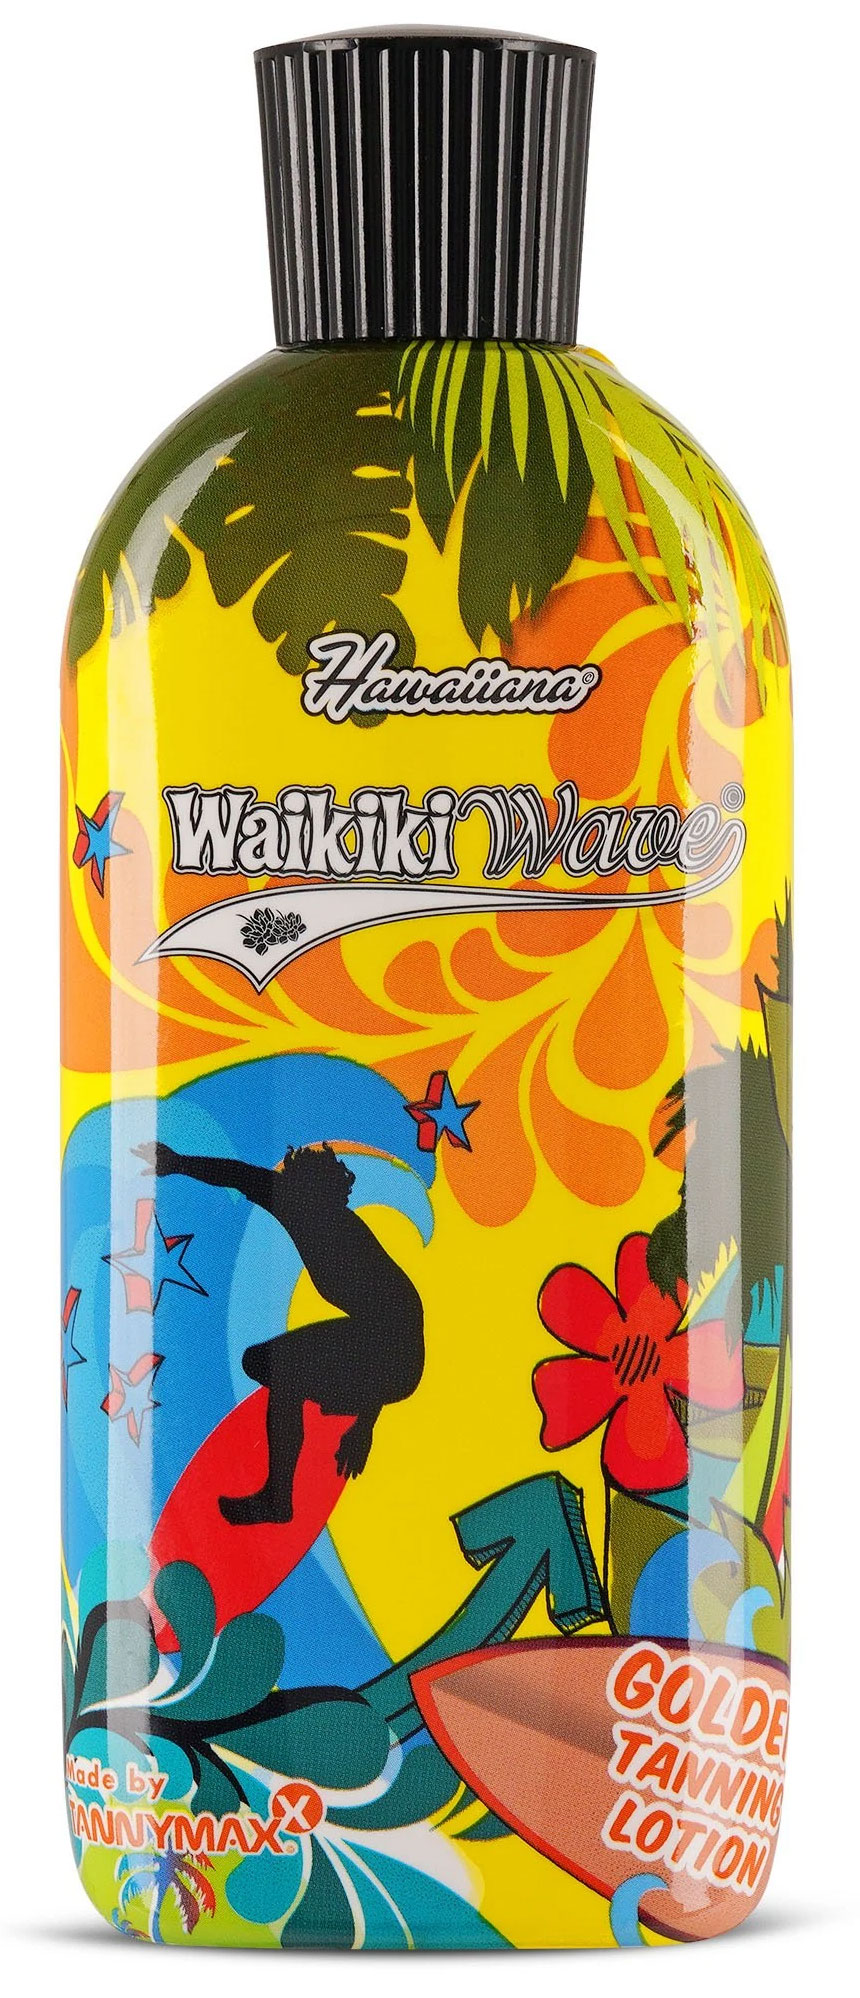 Tannymaxx Hawaiiana Waikiki Wave - Golden Tanning Lotion, 1er Pack (1 x 200 ml) 2201020000 width=